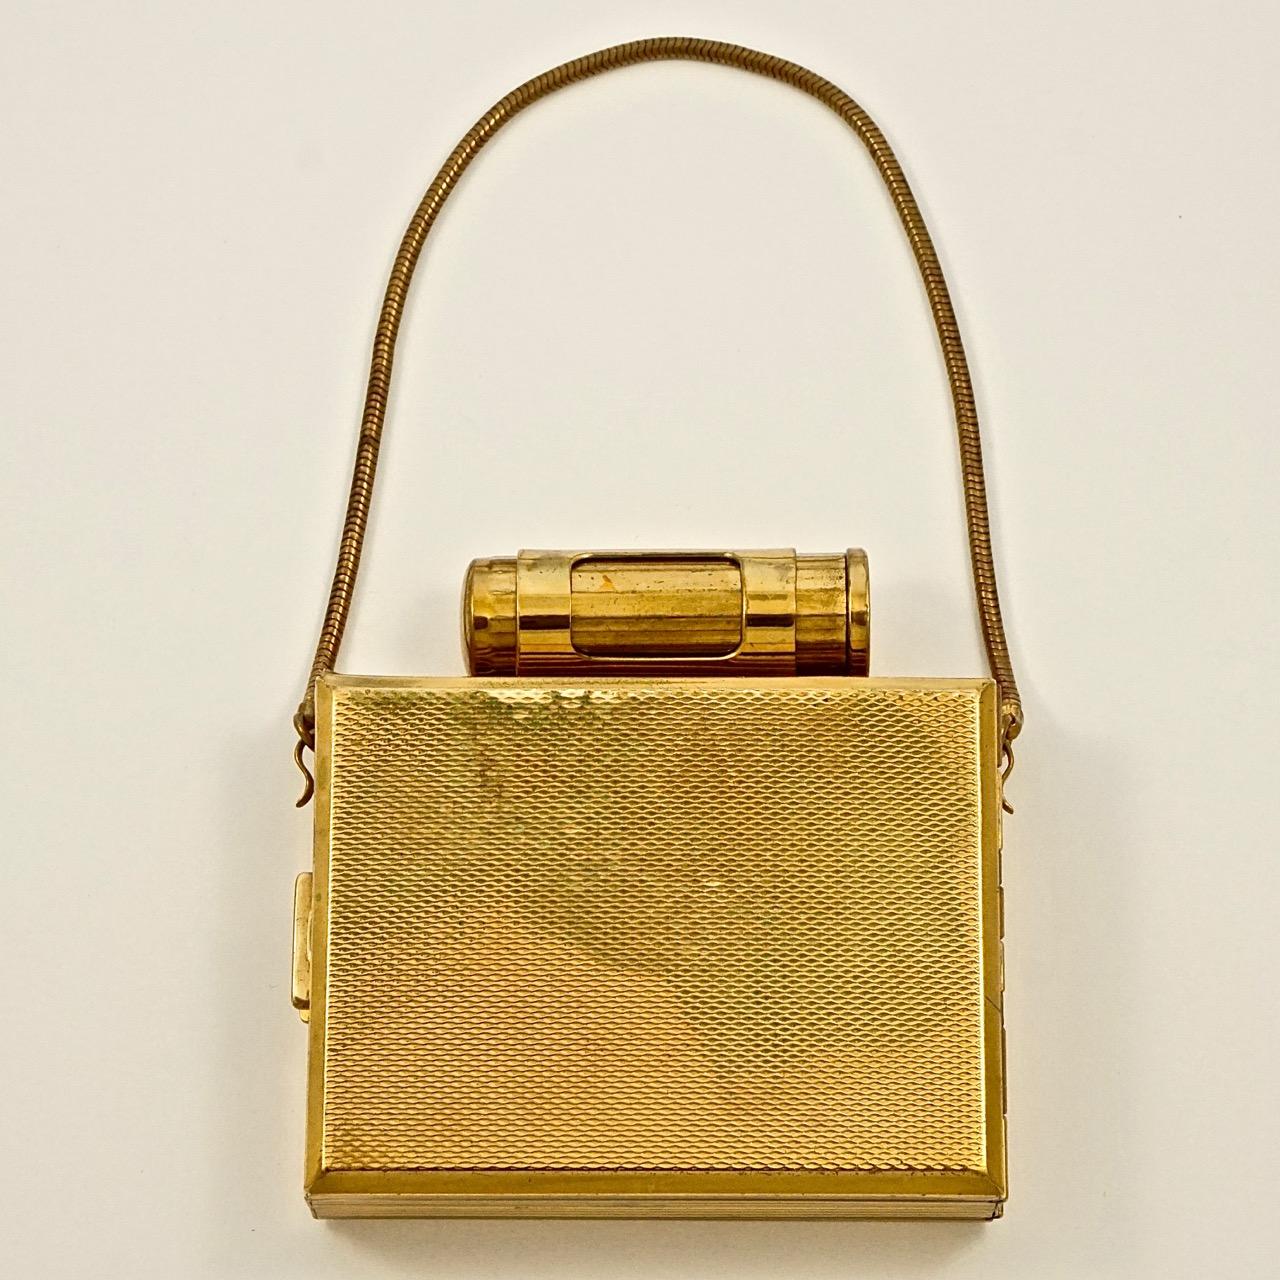 Kigu goldfarbene kompakte Partytasche mit einem hübschen strukturierten Rautenmuster auf der Vorder- und Rückseite und einem Schlangenkettengriff. Das Gehäuse ist mit E.G. paraphiert. Länge 7,55 cm / 3 Zoll, Breite 5,8 cm / 2,8 Zoll und Höhe 2,1 cm